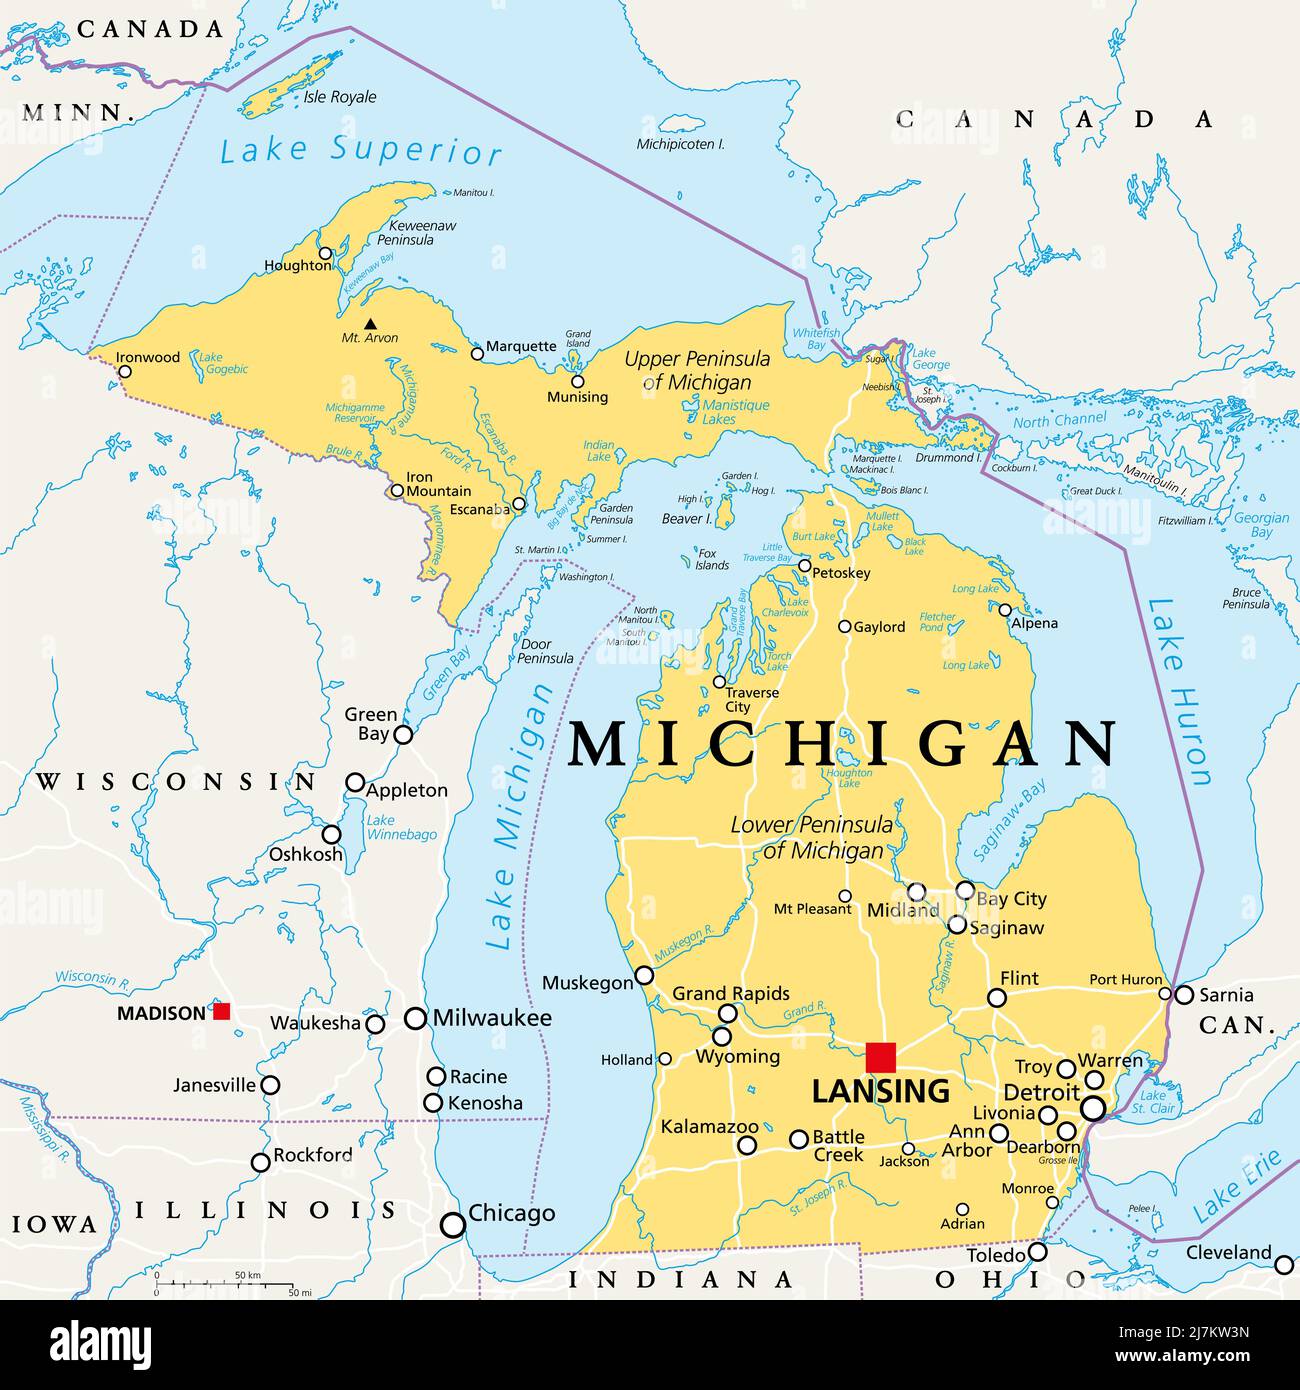 Michigan, MI, politische Karte, mit Hauptstadt Lansing und Metropolregion Detroit. Staat in der Region der Großen Seen im oberen Mittleren Westen der Vereinigten Staaten. Stockfoto